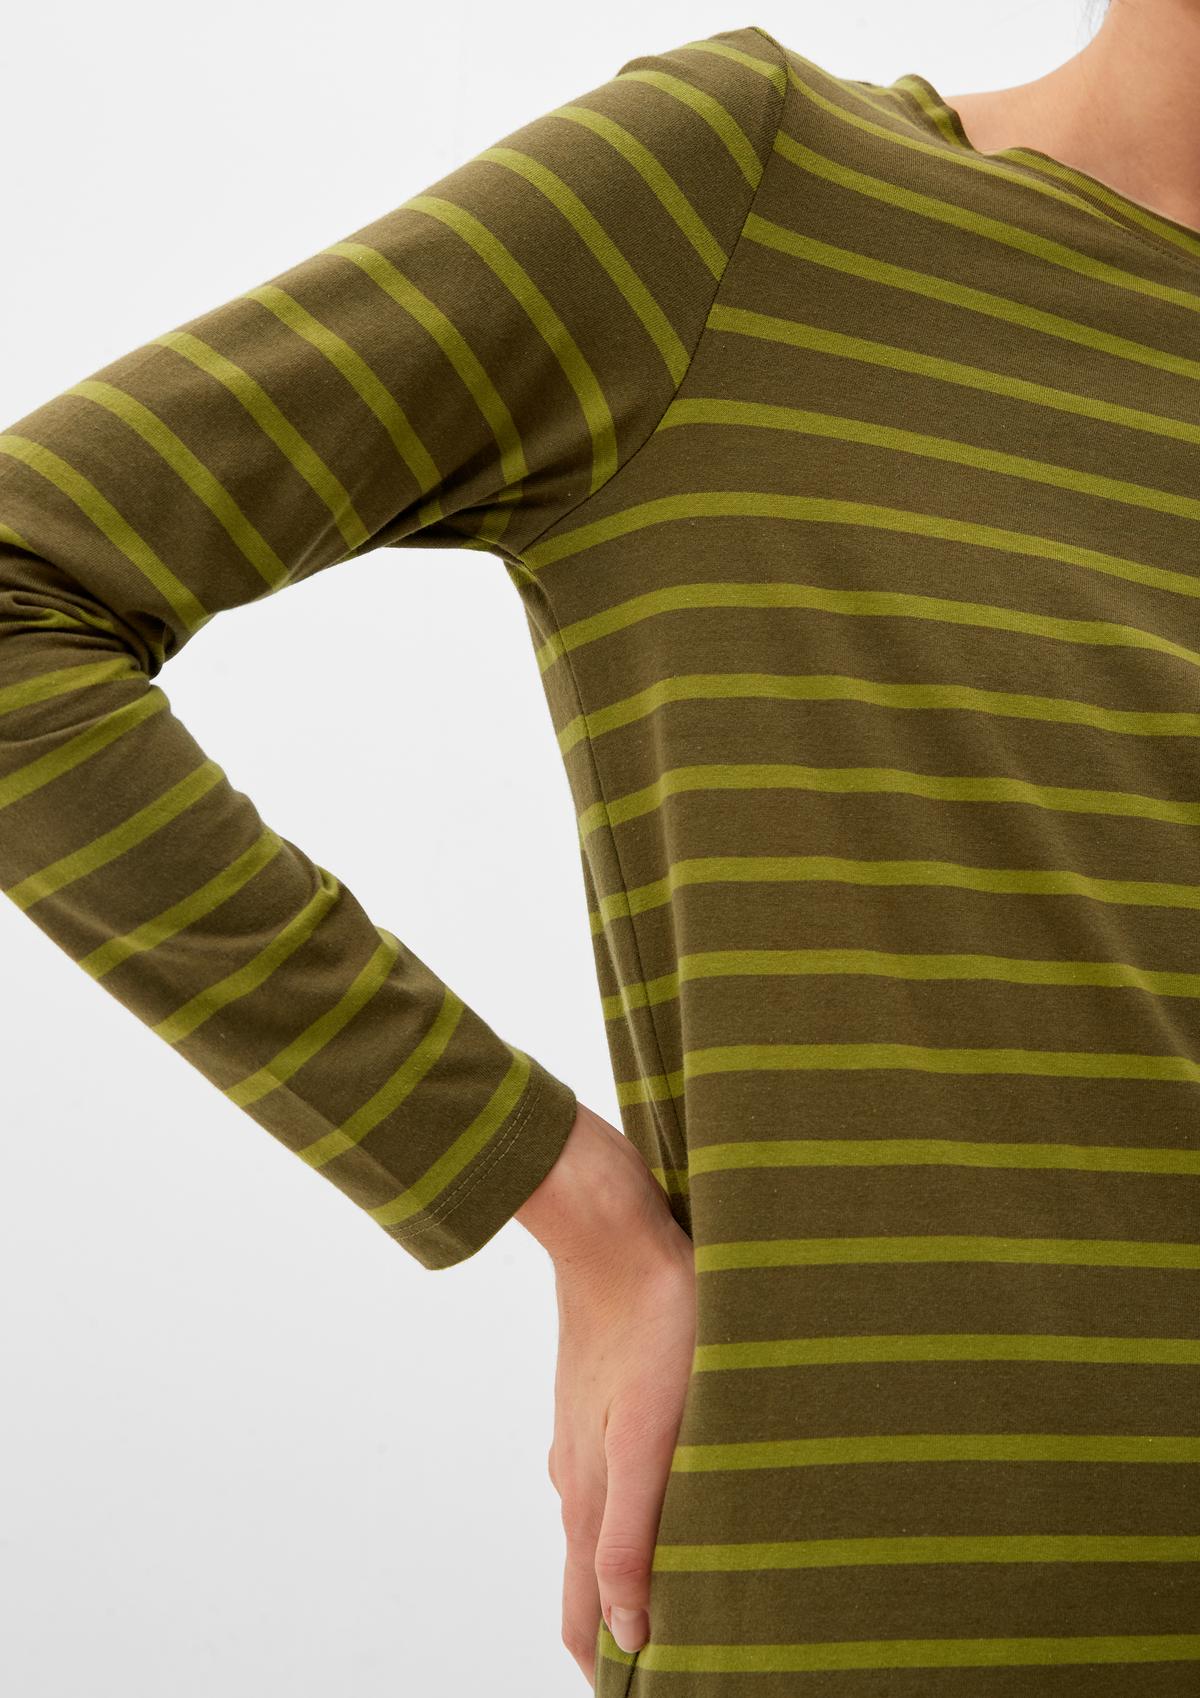 s.Oliver T-shirt à manches longues en jersey de coton